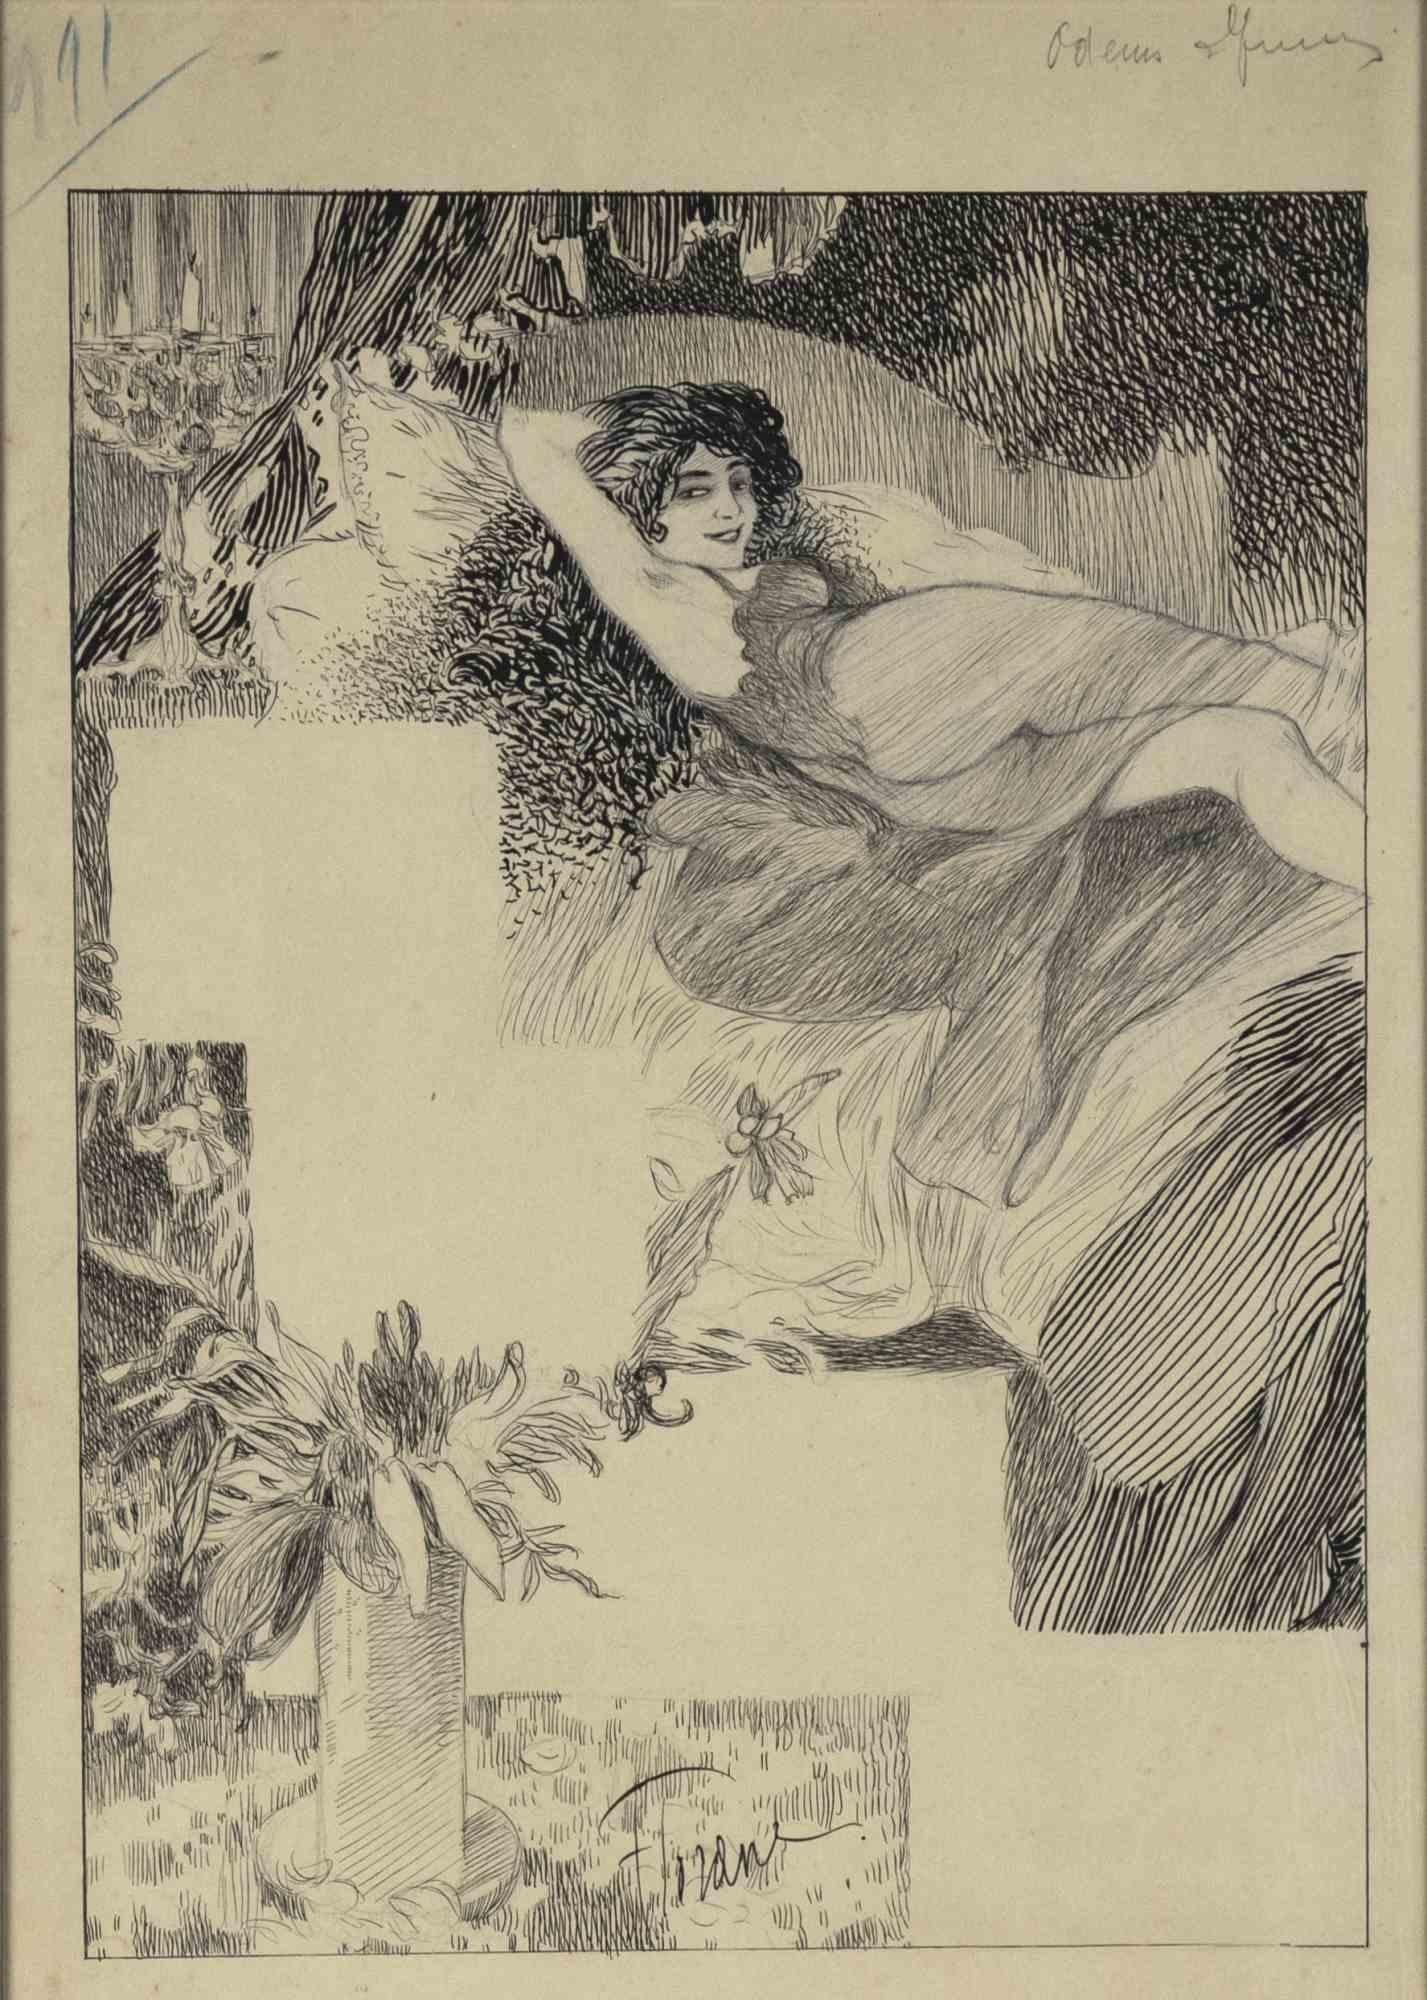 Woman ist ein modernes Kunstwerk des französischen Künstlers Florane (1871-1939) aus dem frühen 20. Jahrhundert.

Feder und Bleistiftzeichnung auf Papier.

Signatur des Künstlers am unteren Rand.

Inklusive Rahmen: 45 x 30 cm

Guter Zustand bis auf